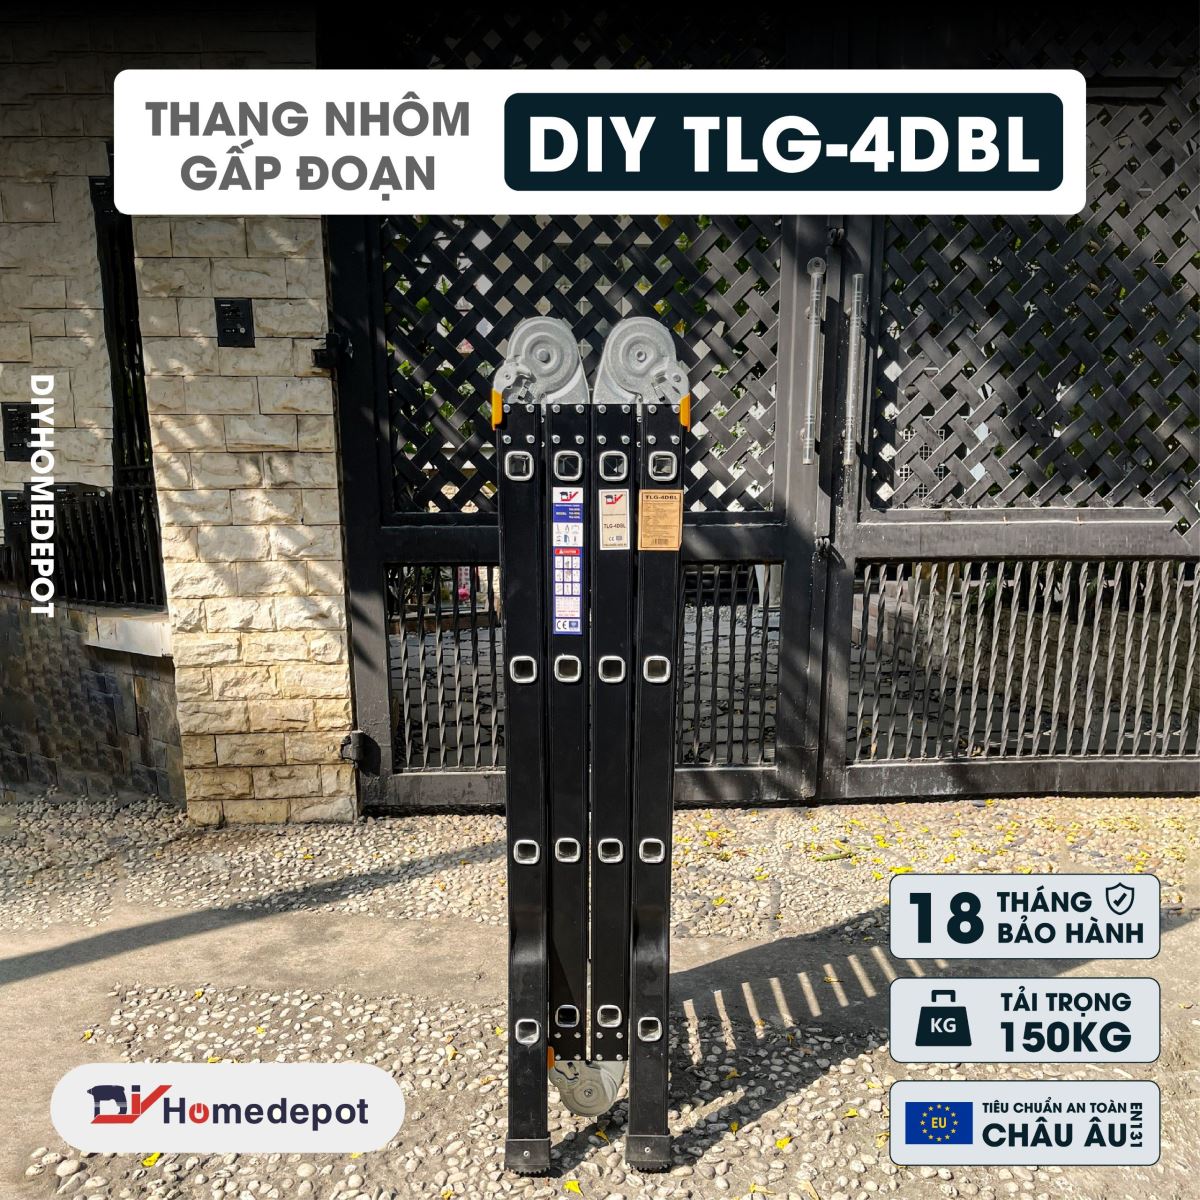 Thang nhôm gấp đoạn DIY TLG-4DBL